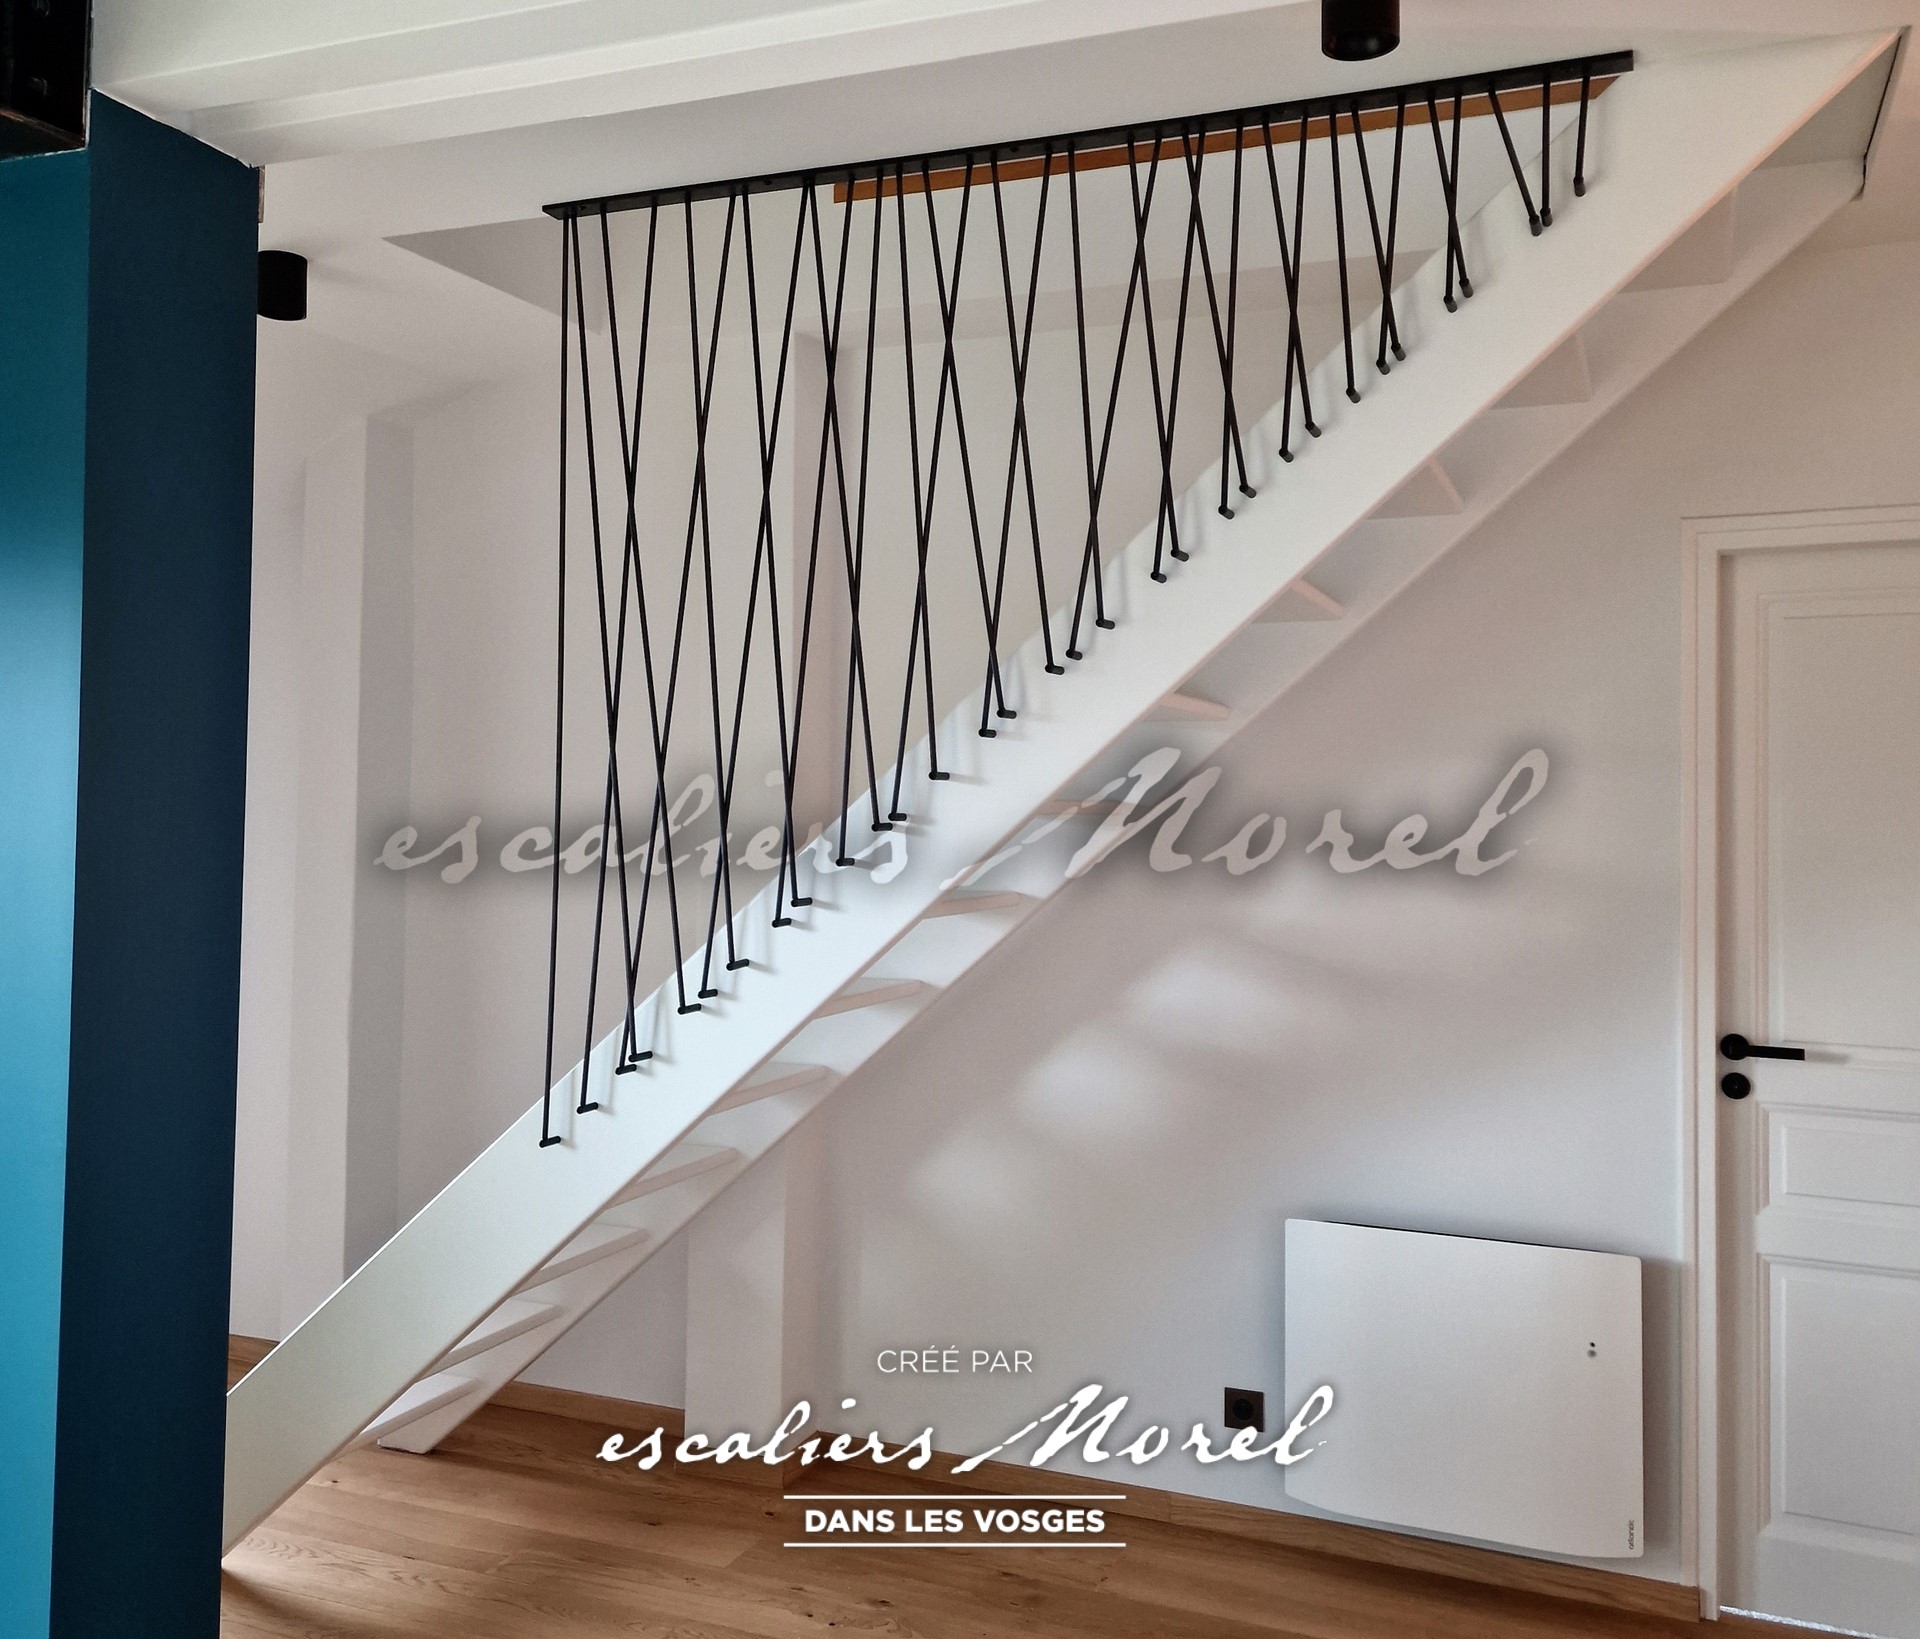 Escaliers-morel - Notre-entreprise - 44